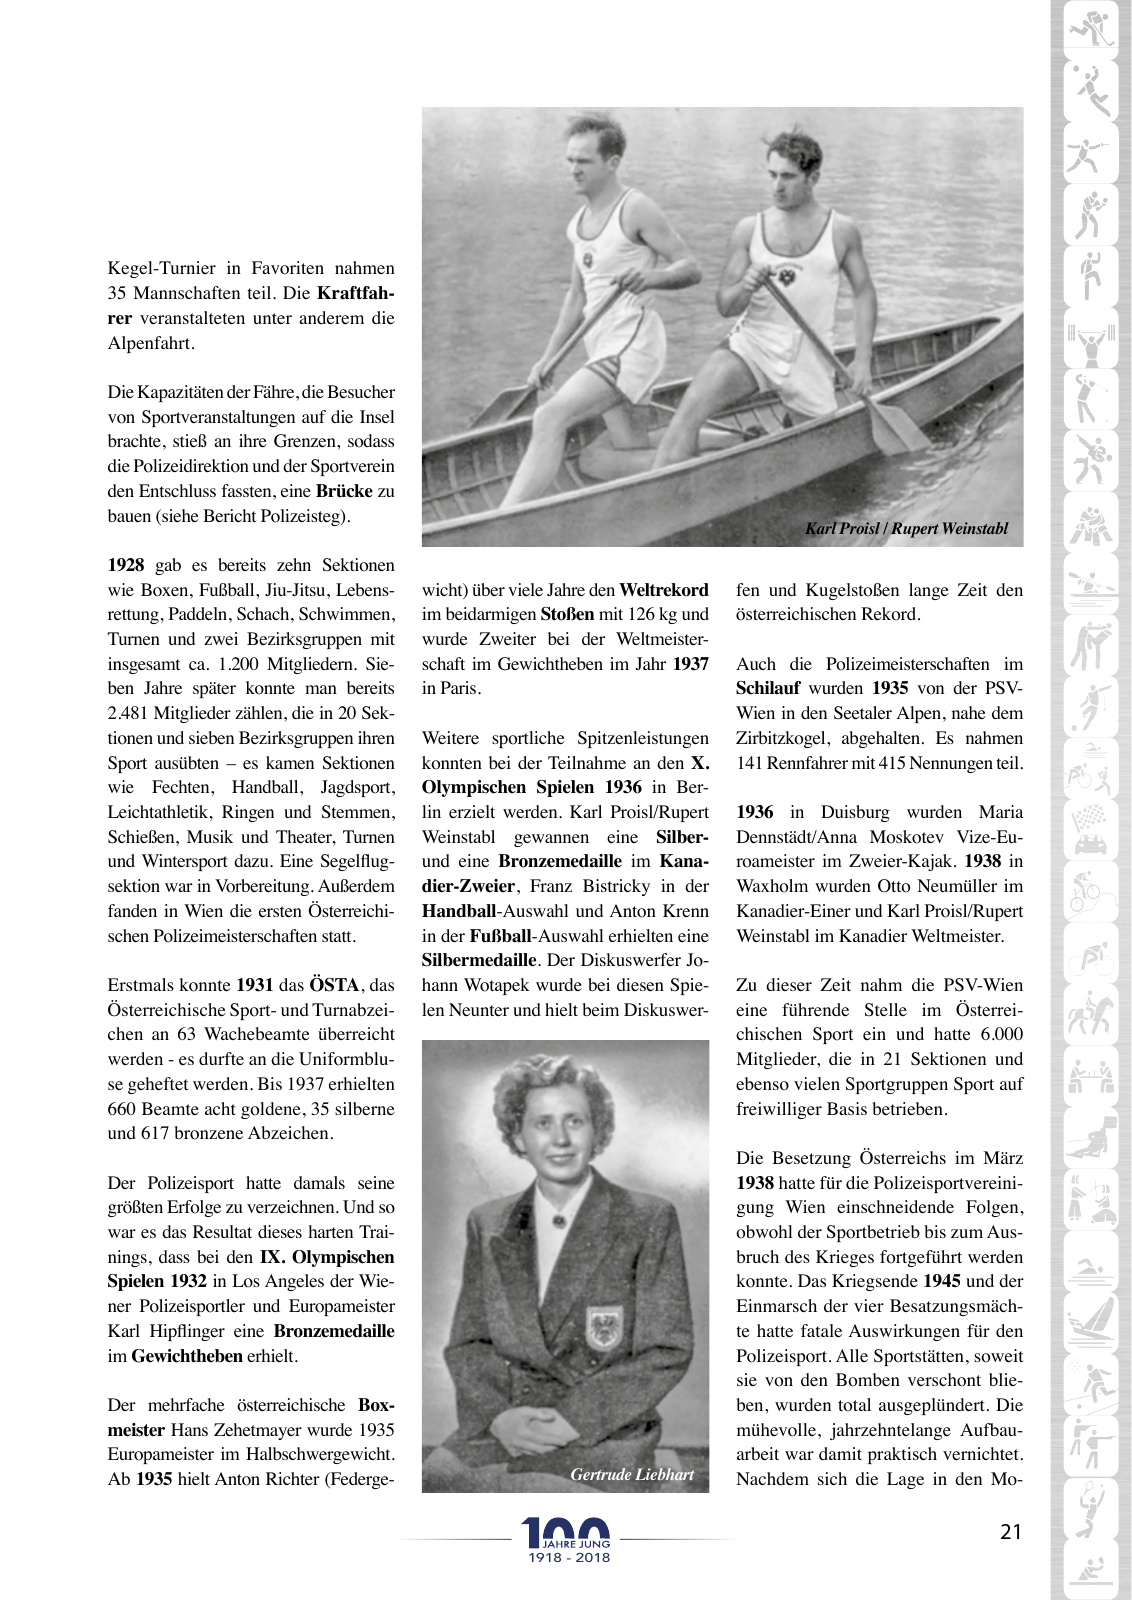 Vorschau Festschrift 100 Jahre PSV-Wien Seite 19